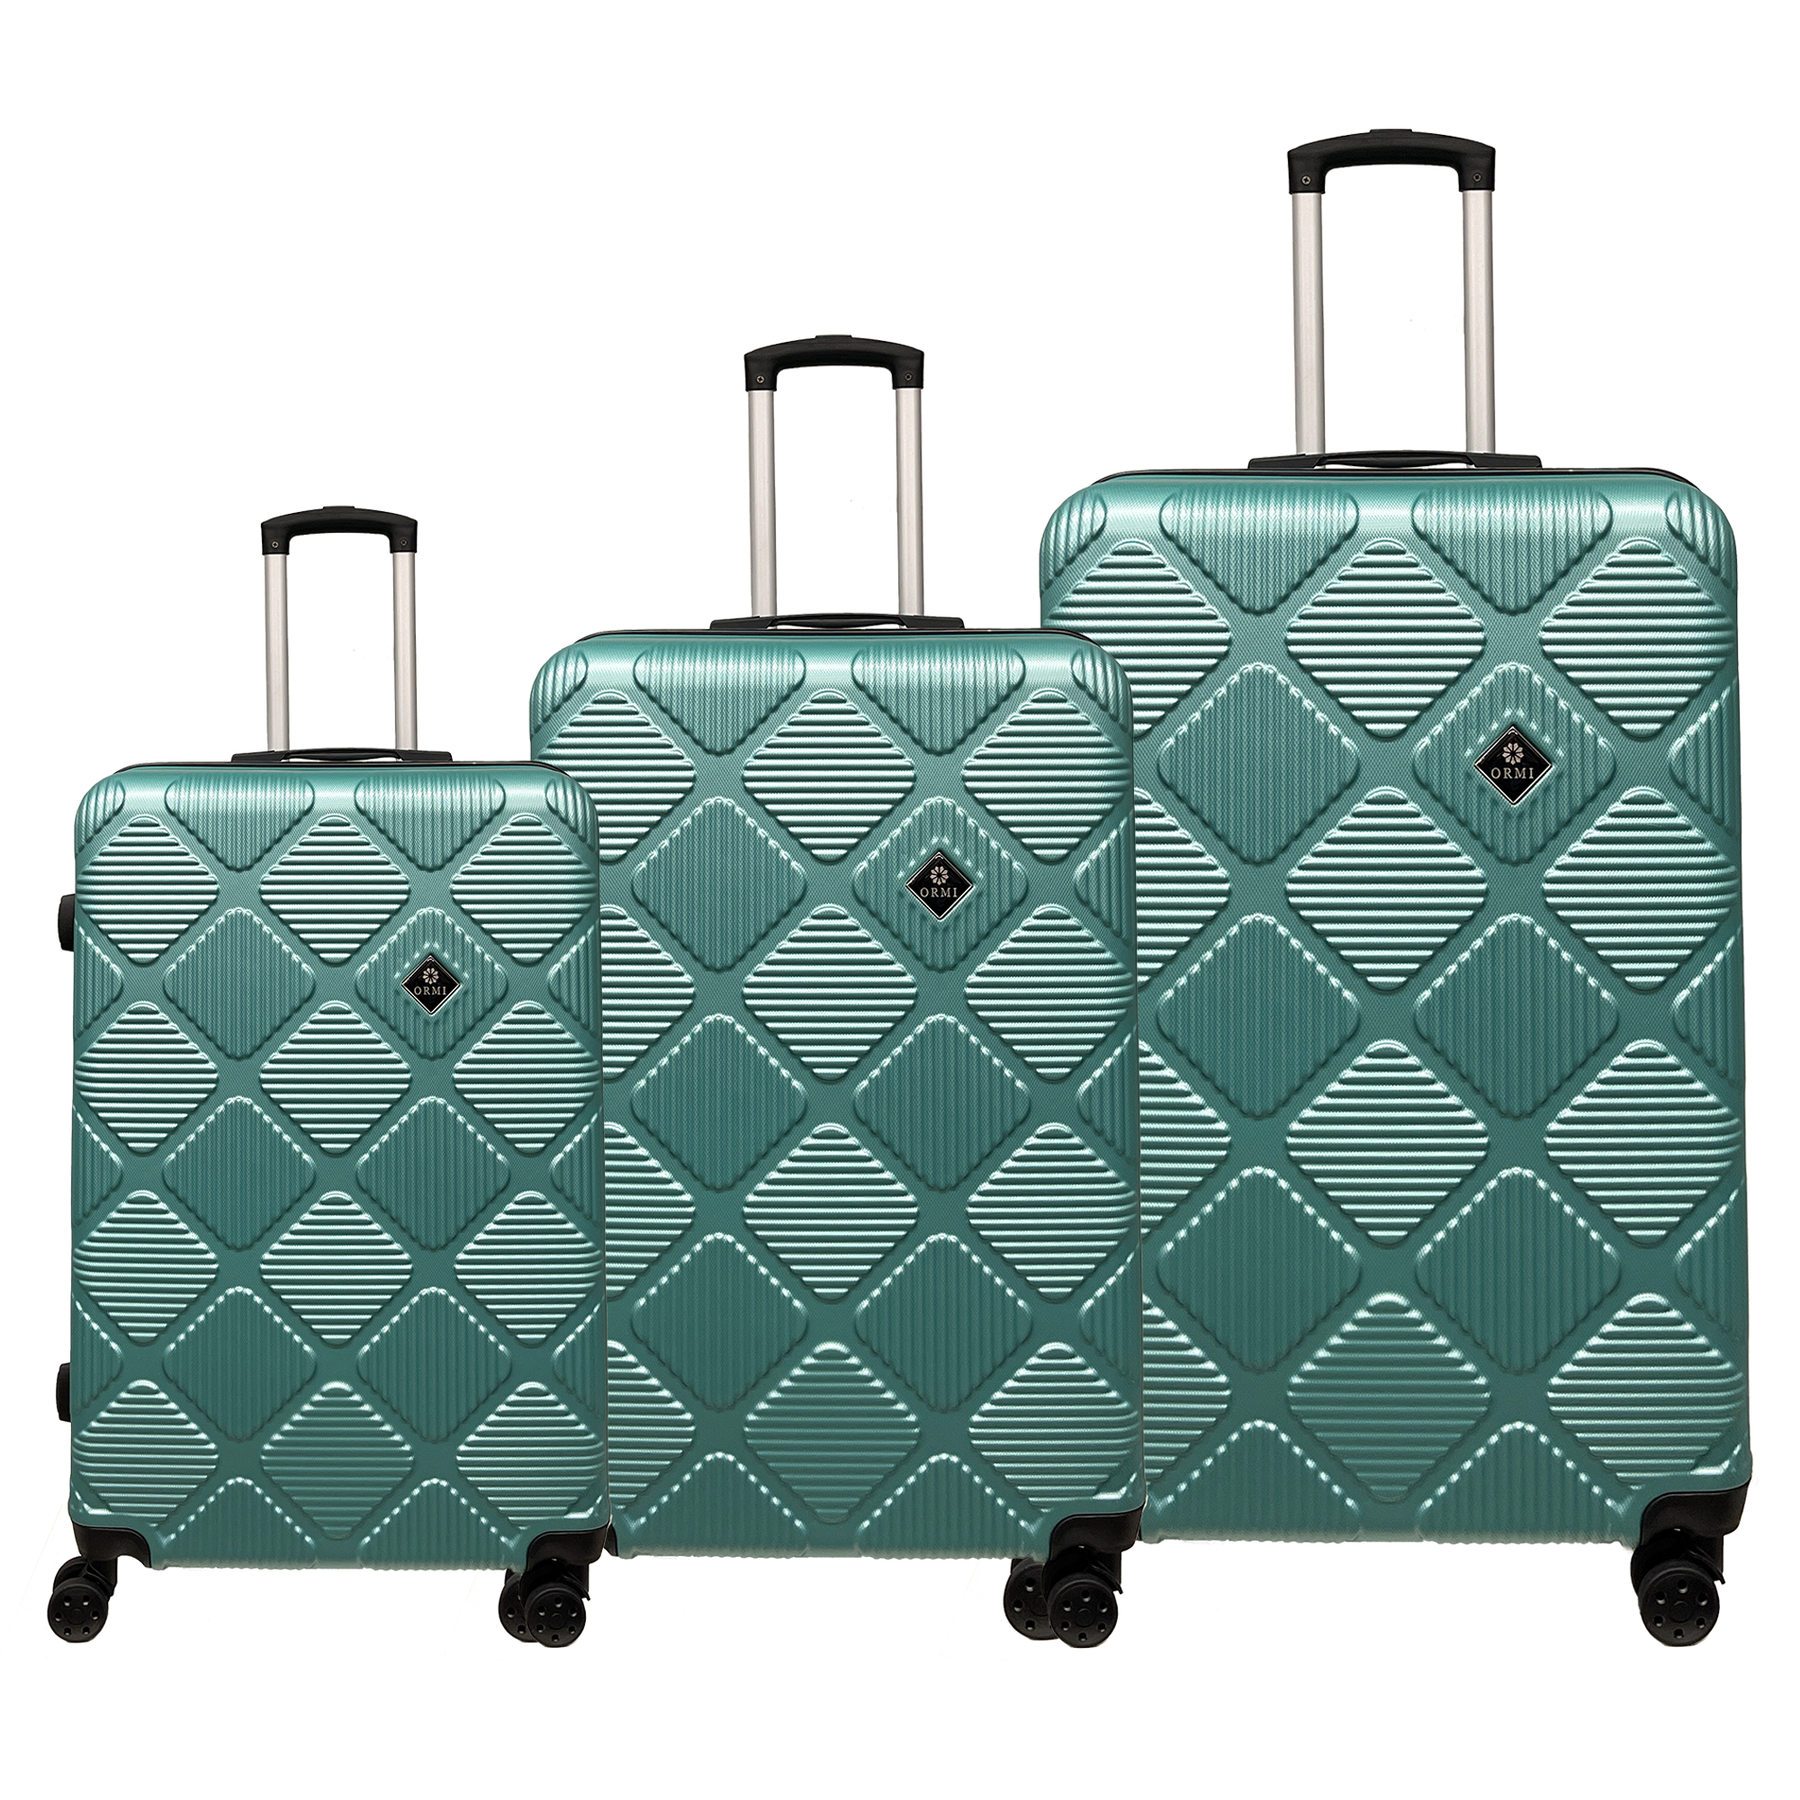 Reisekoffer-Set Ormi Diamond Lux - Leicht, robust und elegant | Enthält 3 Rollkoffer